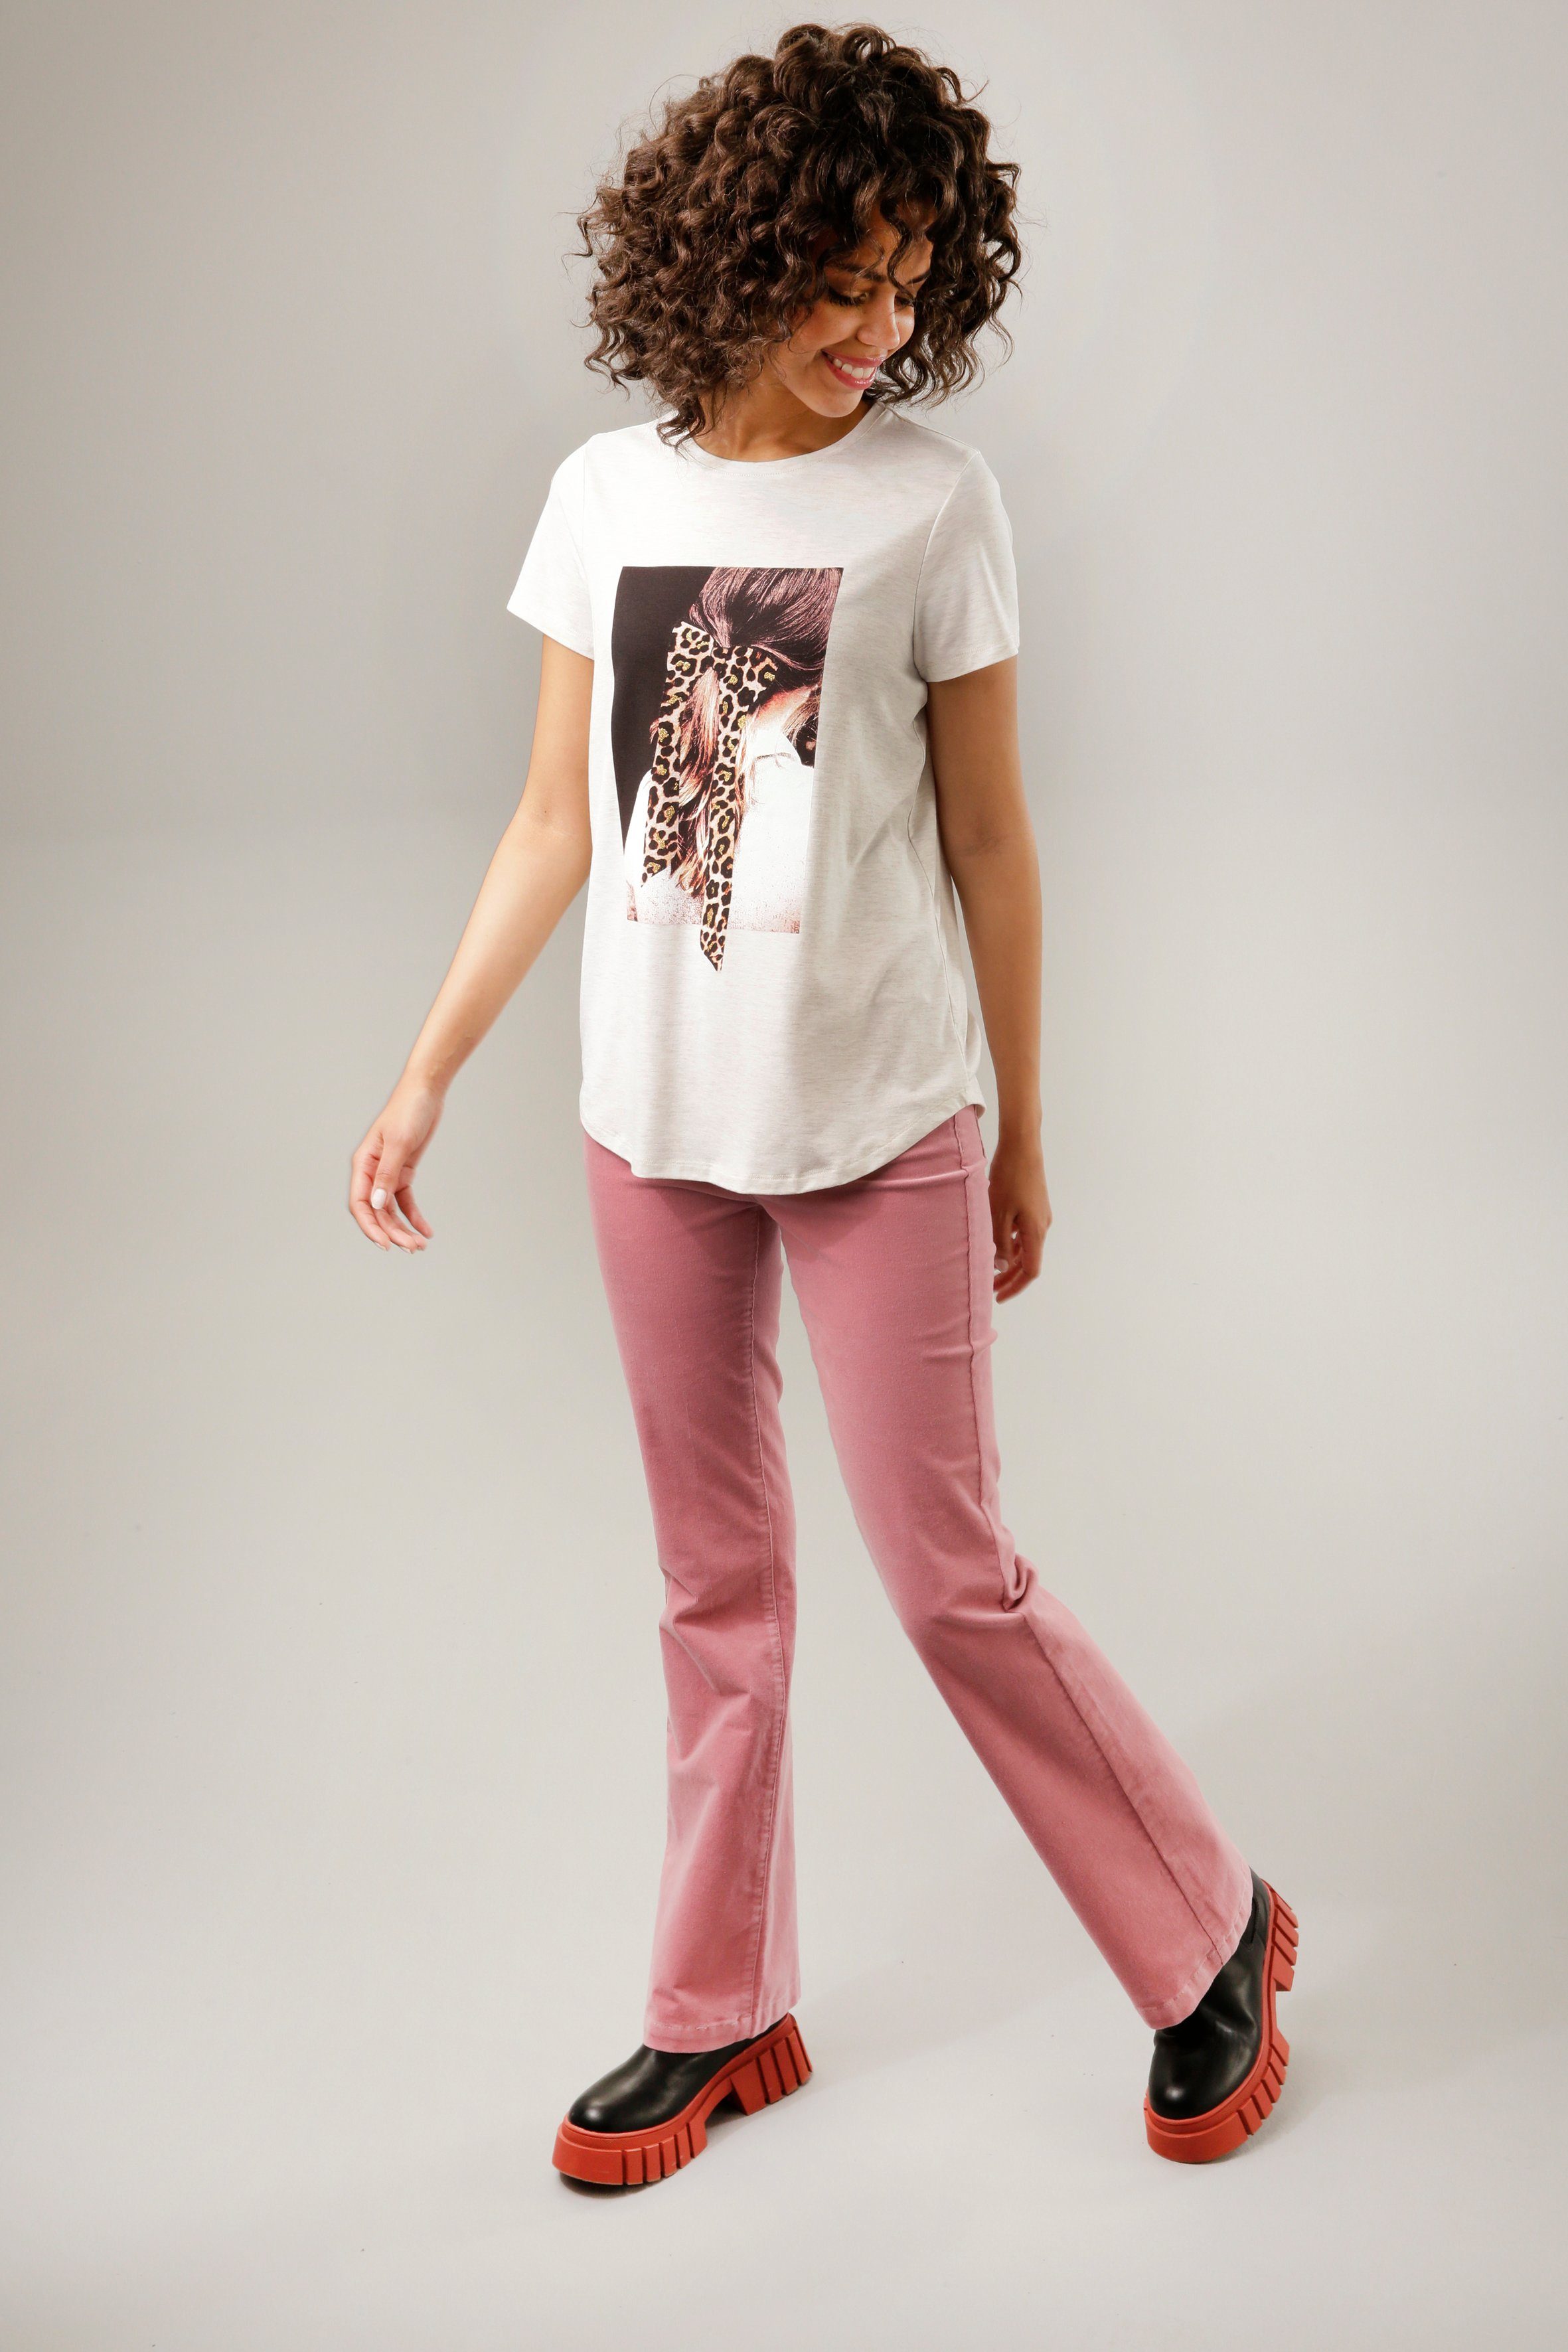 mit Frontdruck CASUAL Glitzer natur-dunkelbraun-weiß-rosa-goldfarben T-Shirt verziertem Aniston